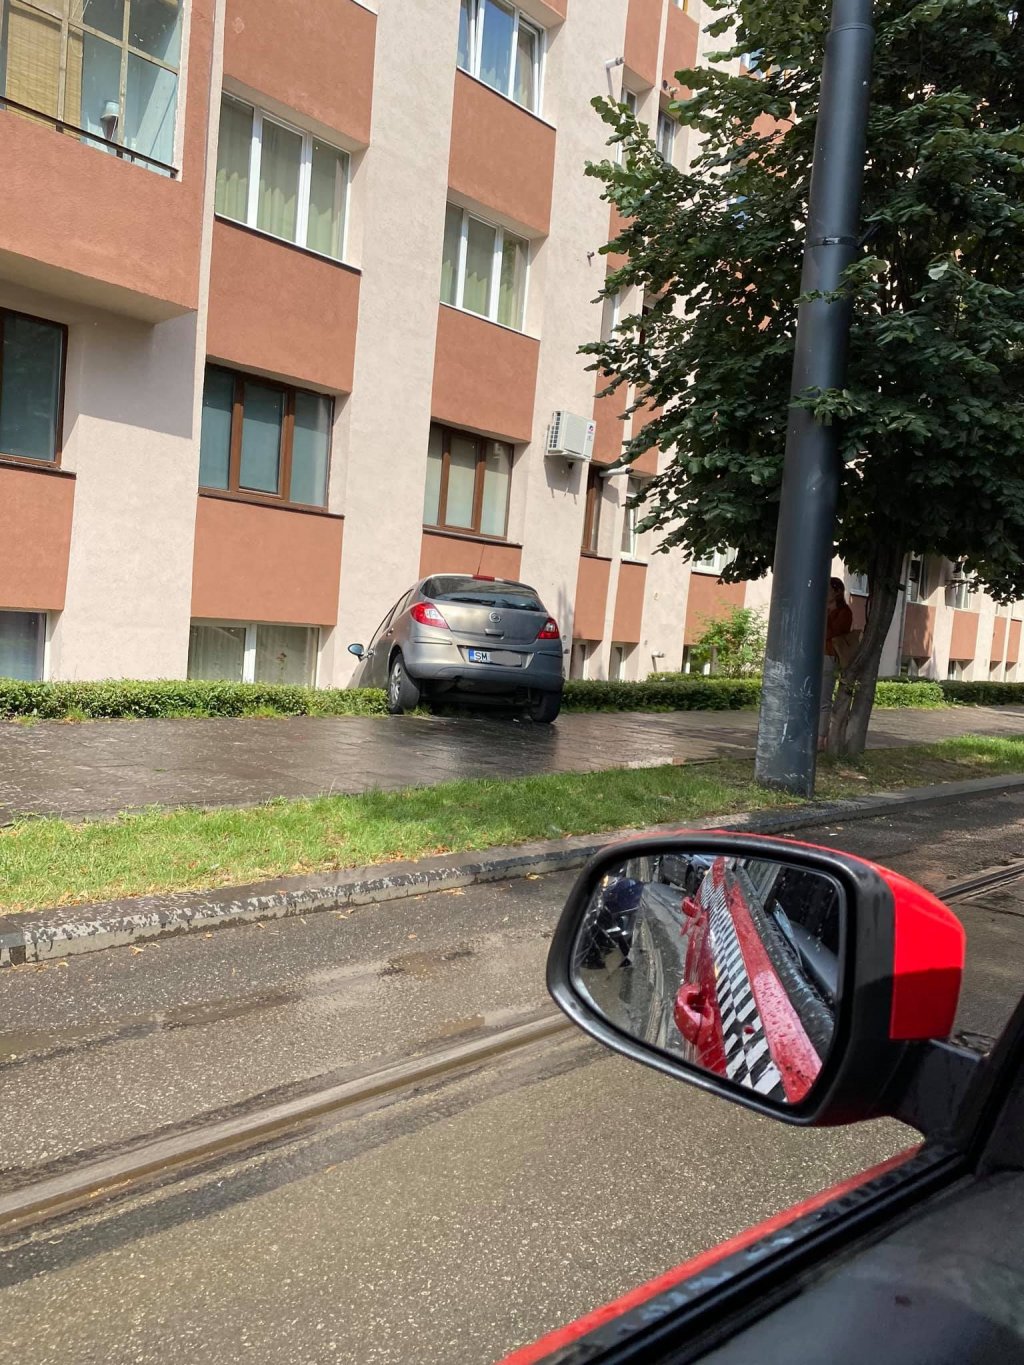 D'ale șoferitului: "Parcare suspendată" pe strada I.L. Caragiale